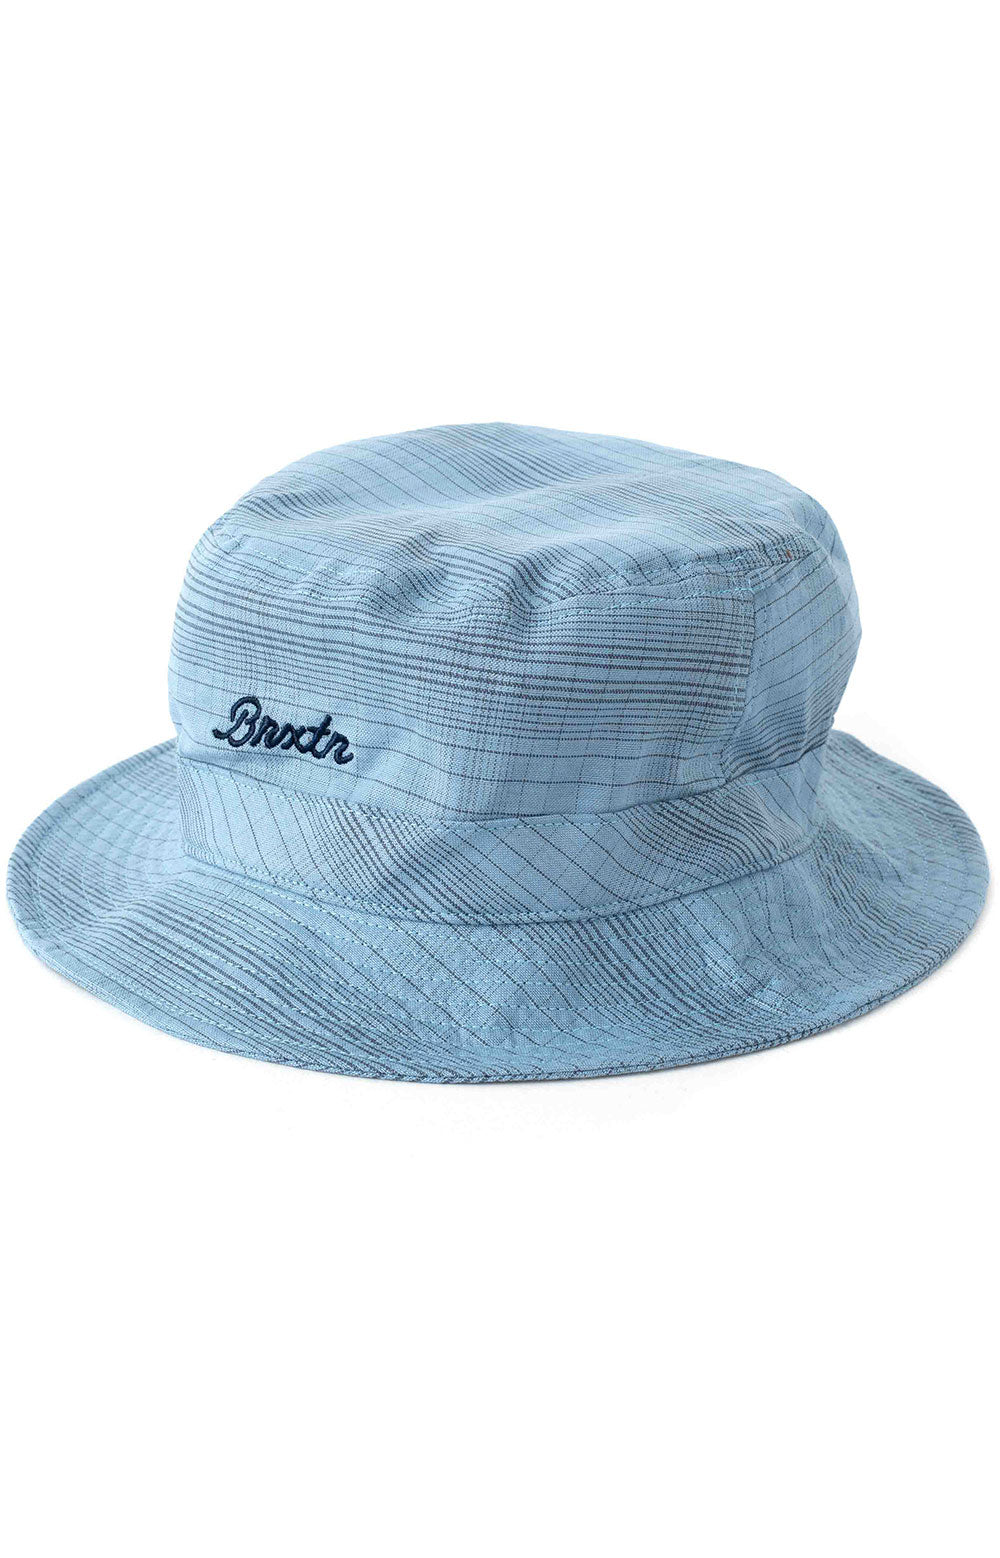 Sprint Packable Bucket Hat - Casa Blanca Blue